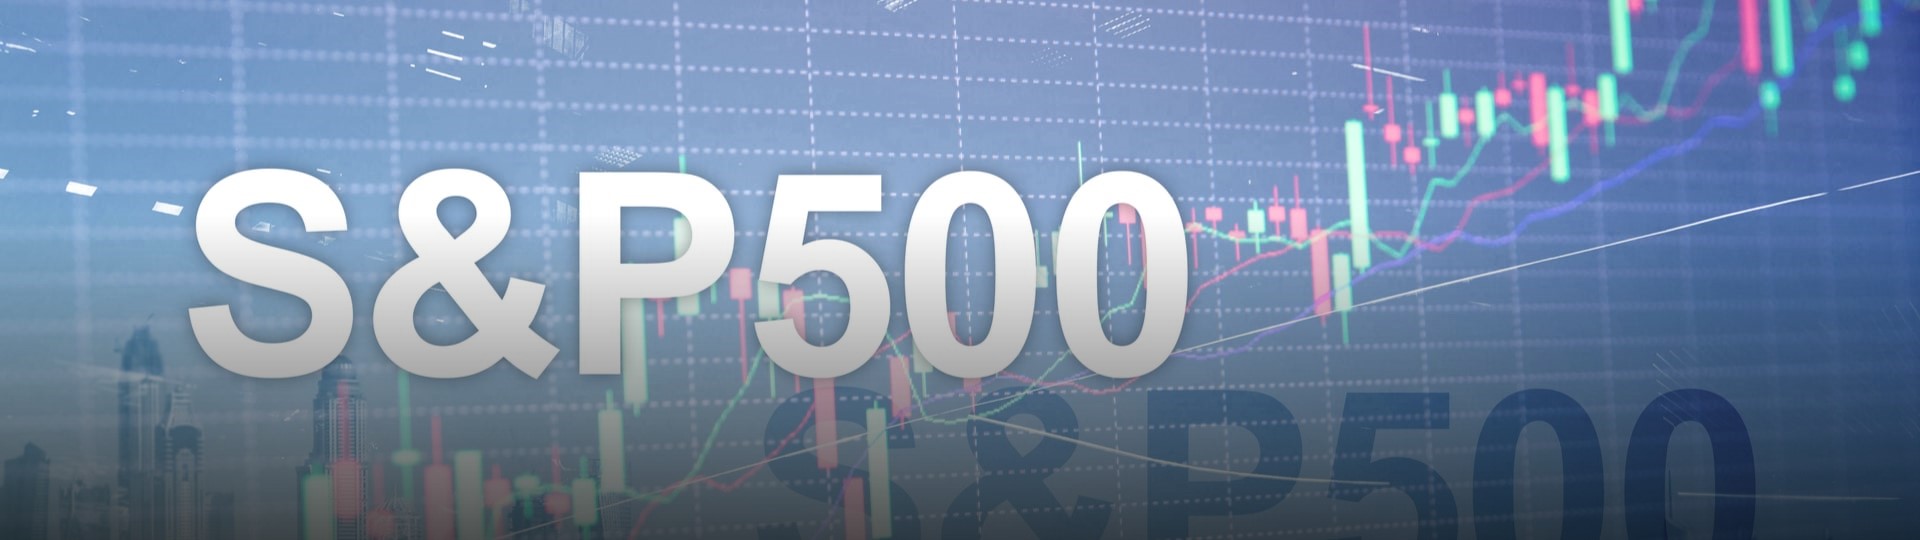 Klíčový index amerických akcií S&P 500 poprvé překonal 4000 bodů